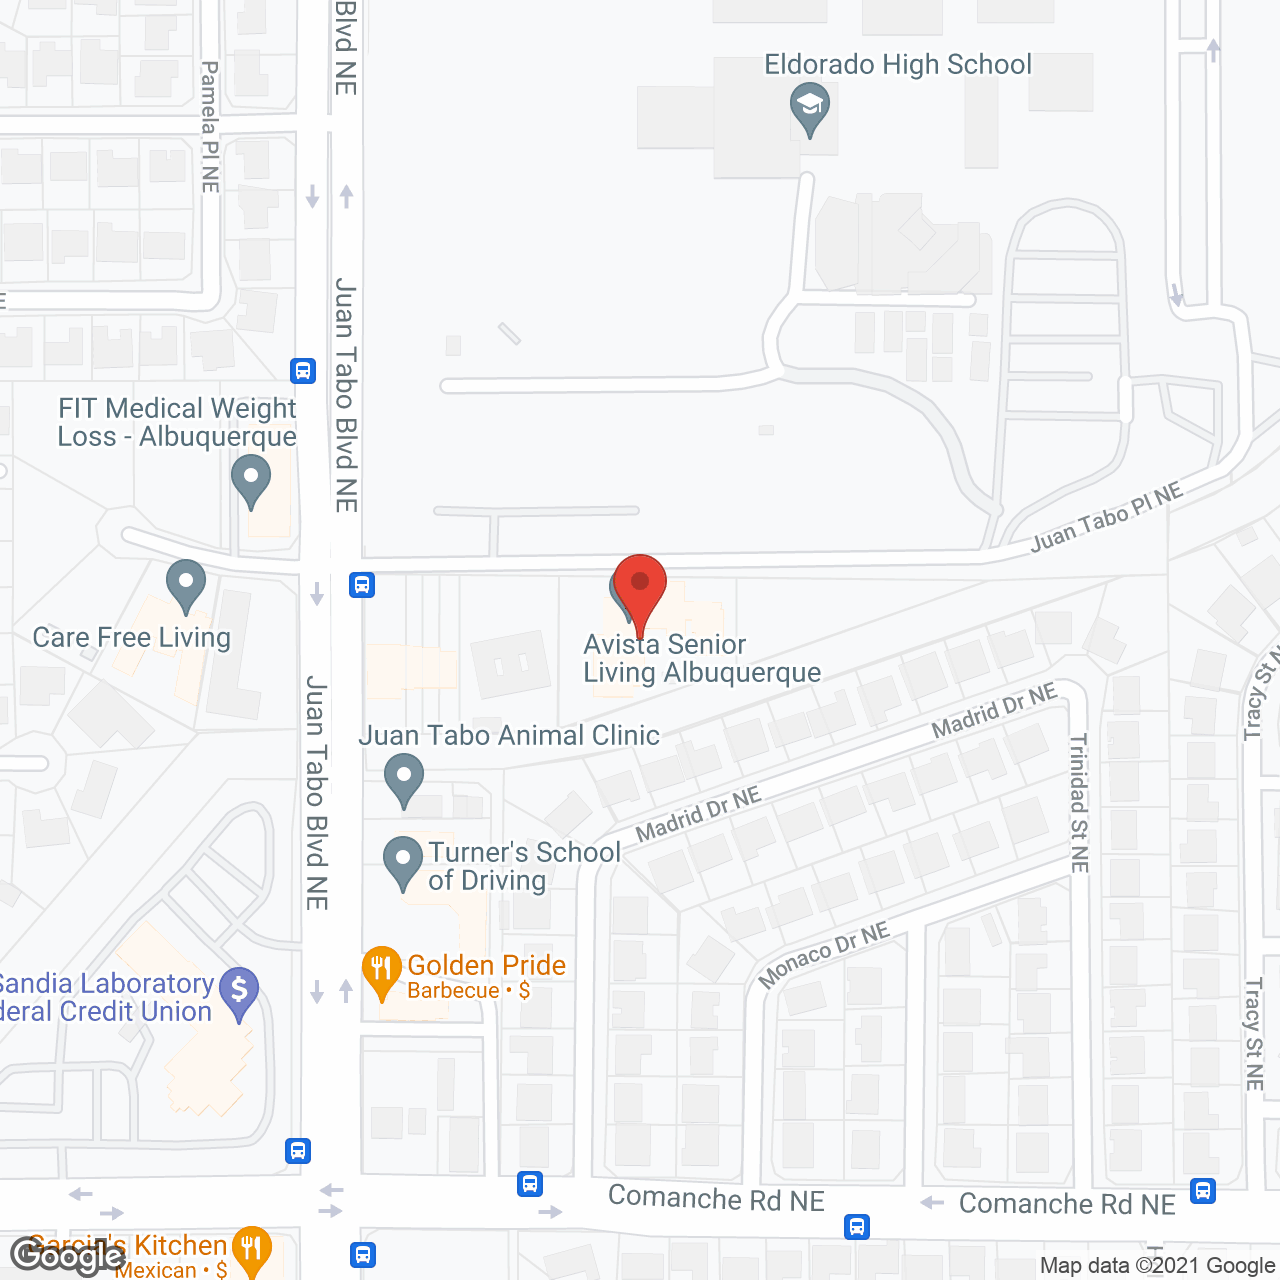 Avista Senior Living Albuquerque in google map